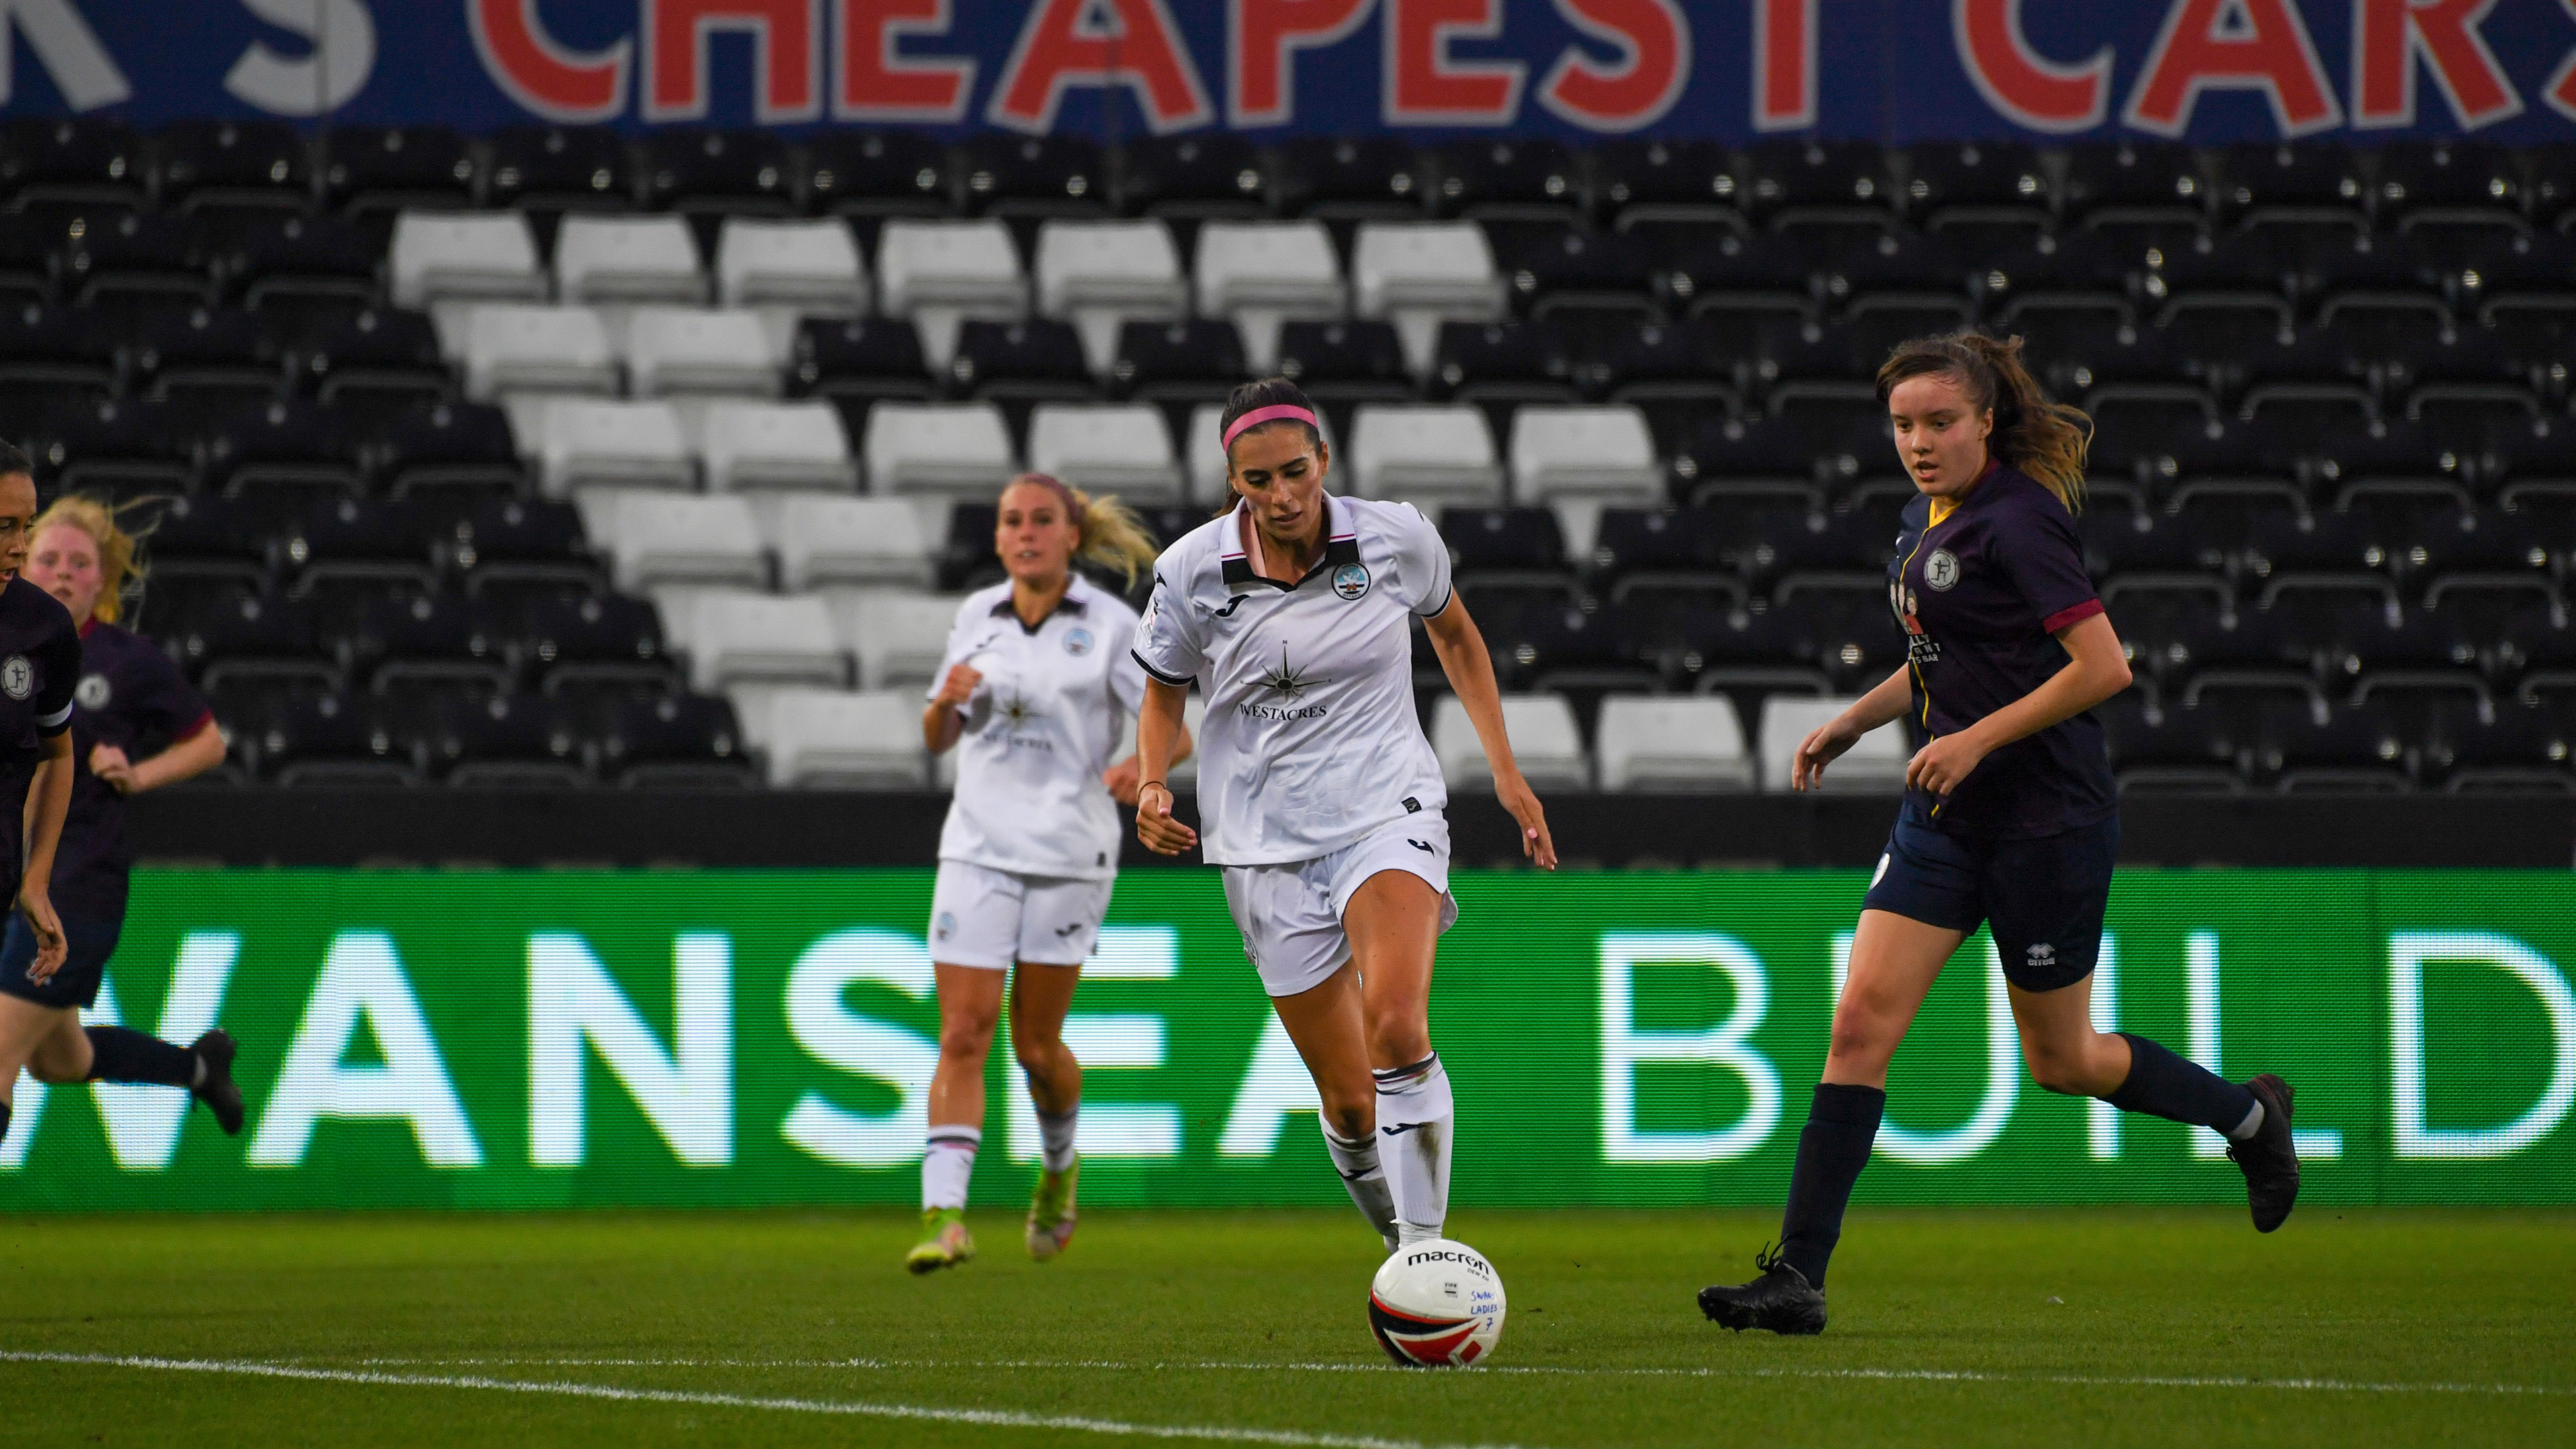 Katy Hosford goal v Cardiff Met Women